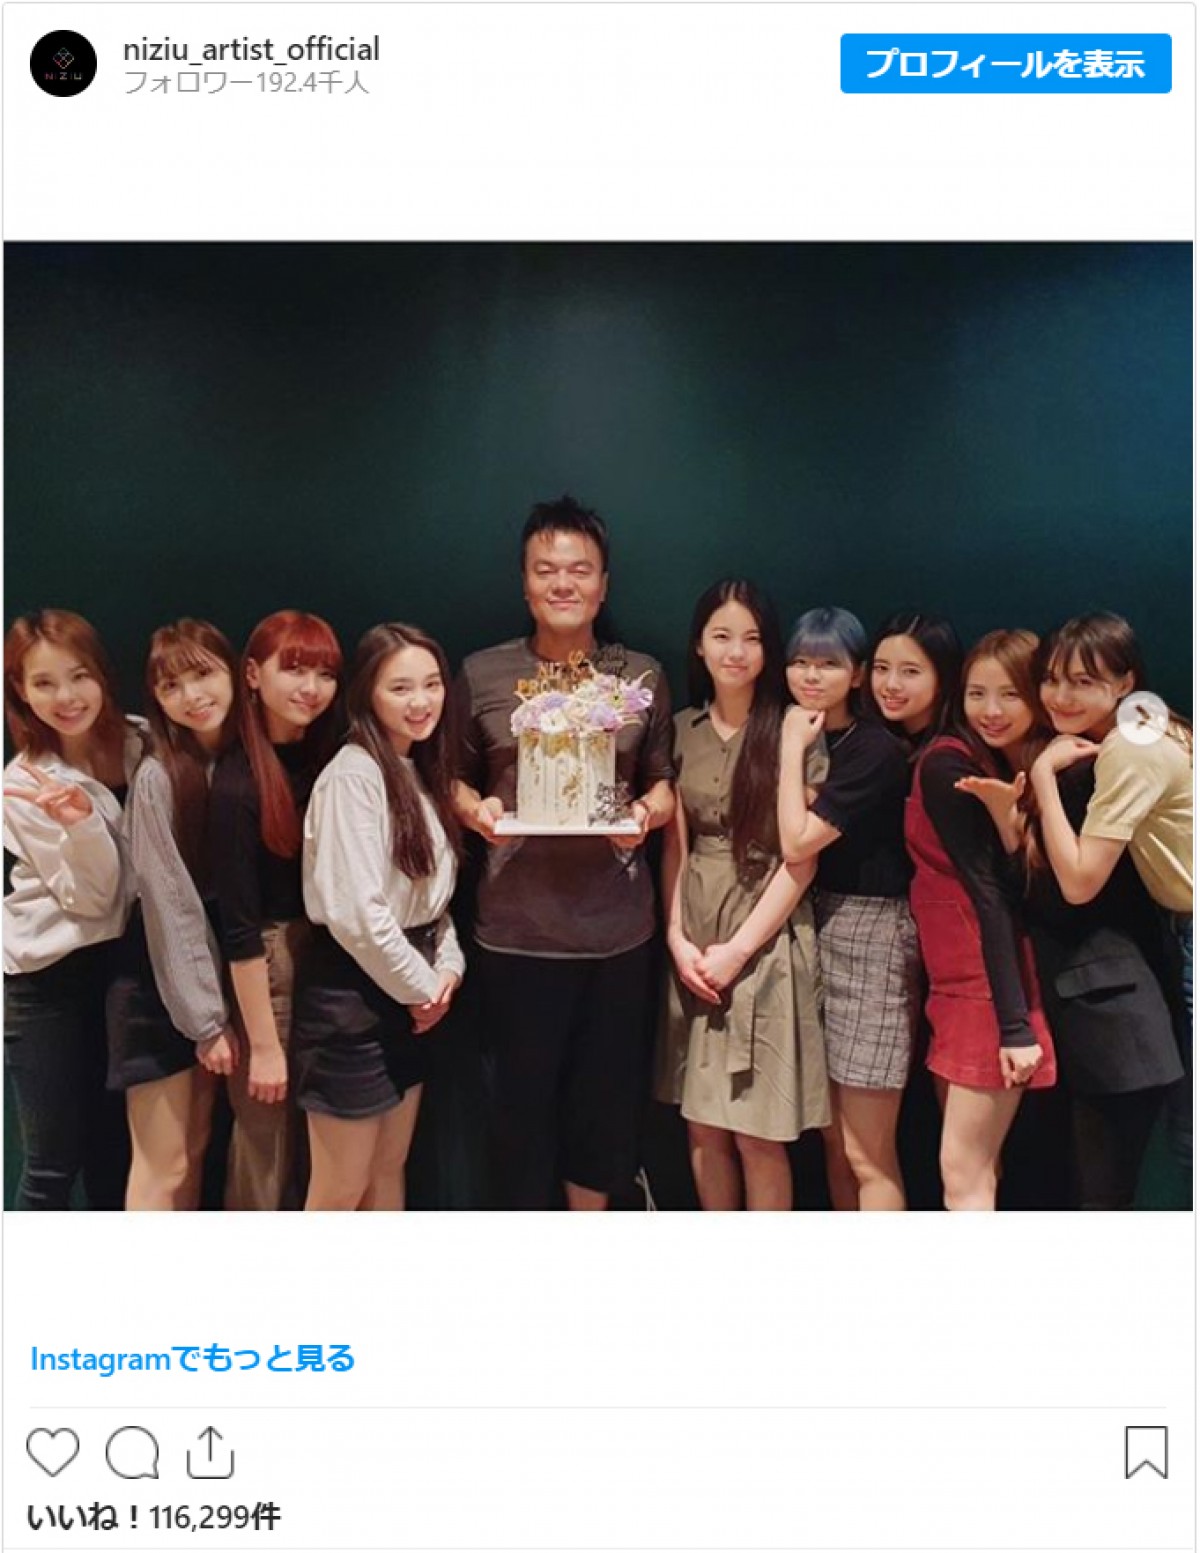 NiziU、アーティスト公式インスタグラム開設　J.Y.Park氏とお祝いの食事をする写真も投稿